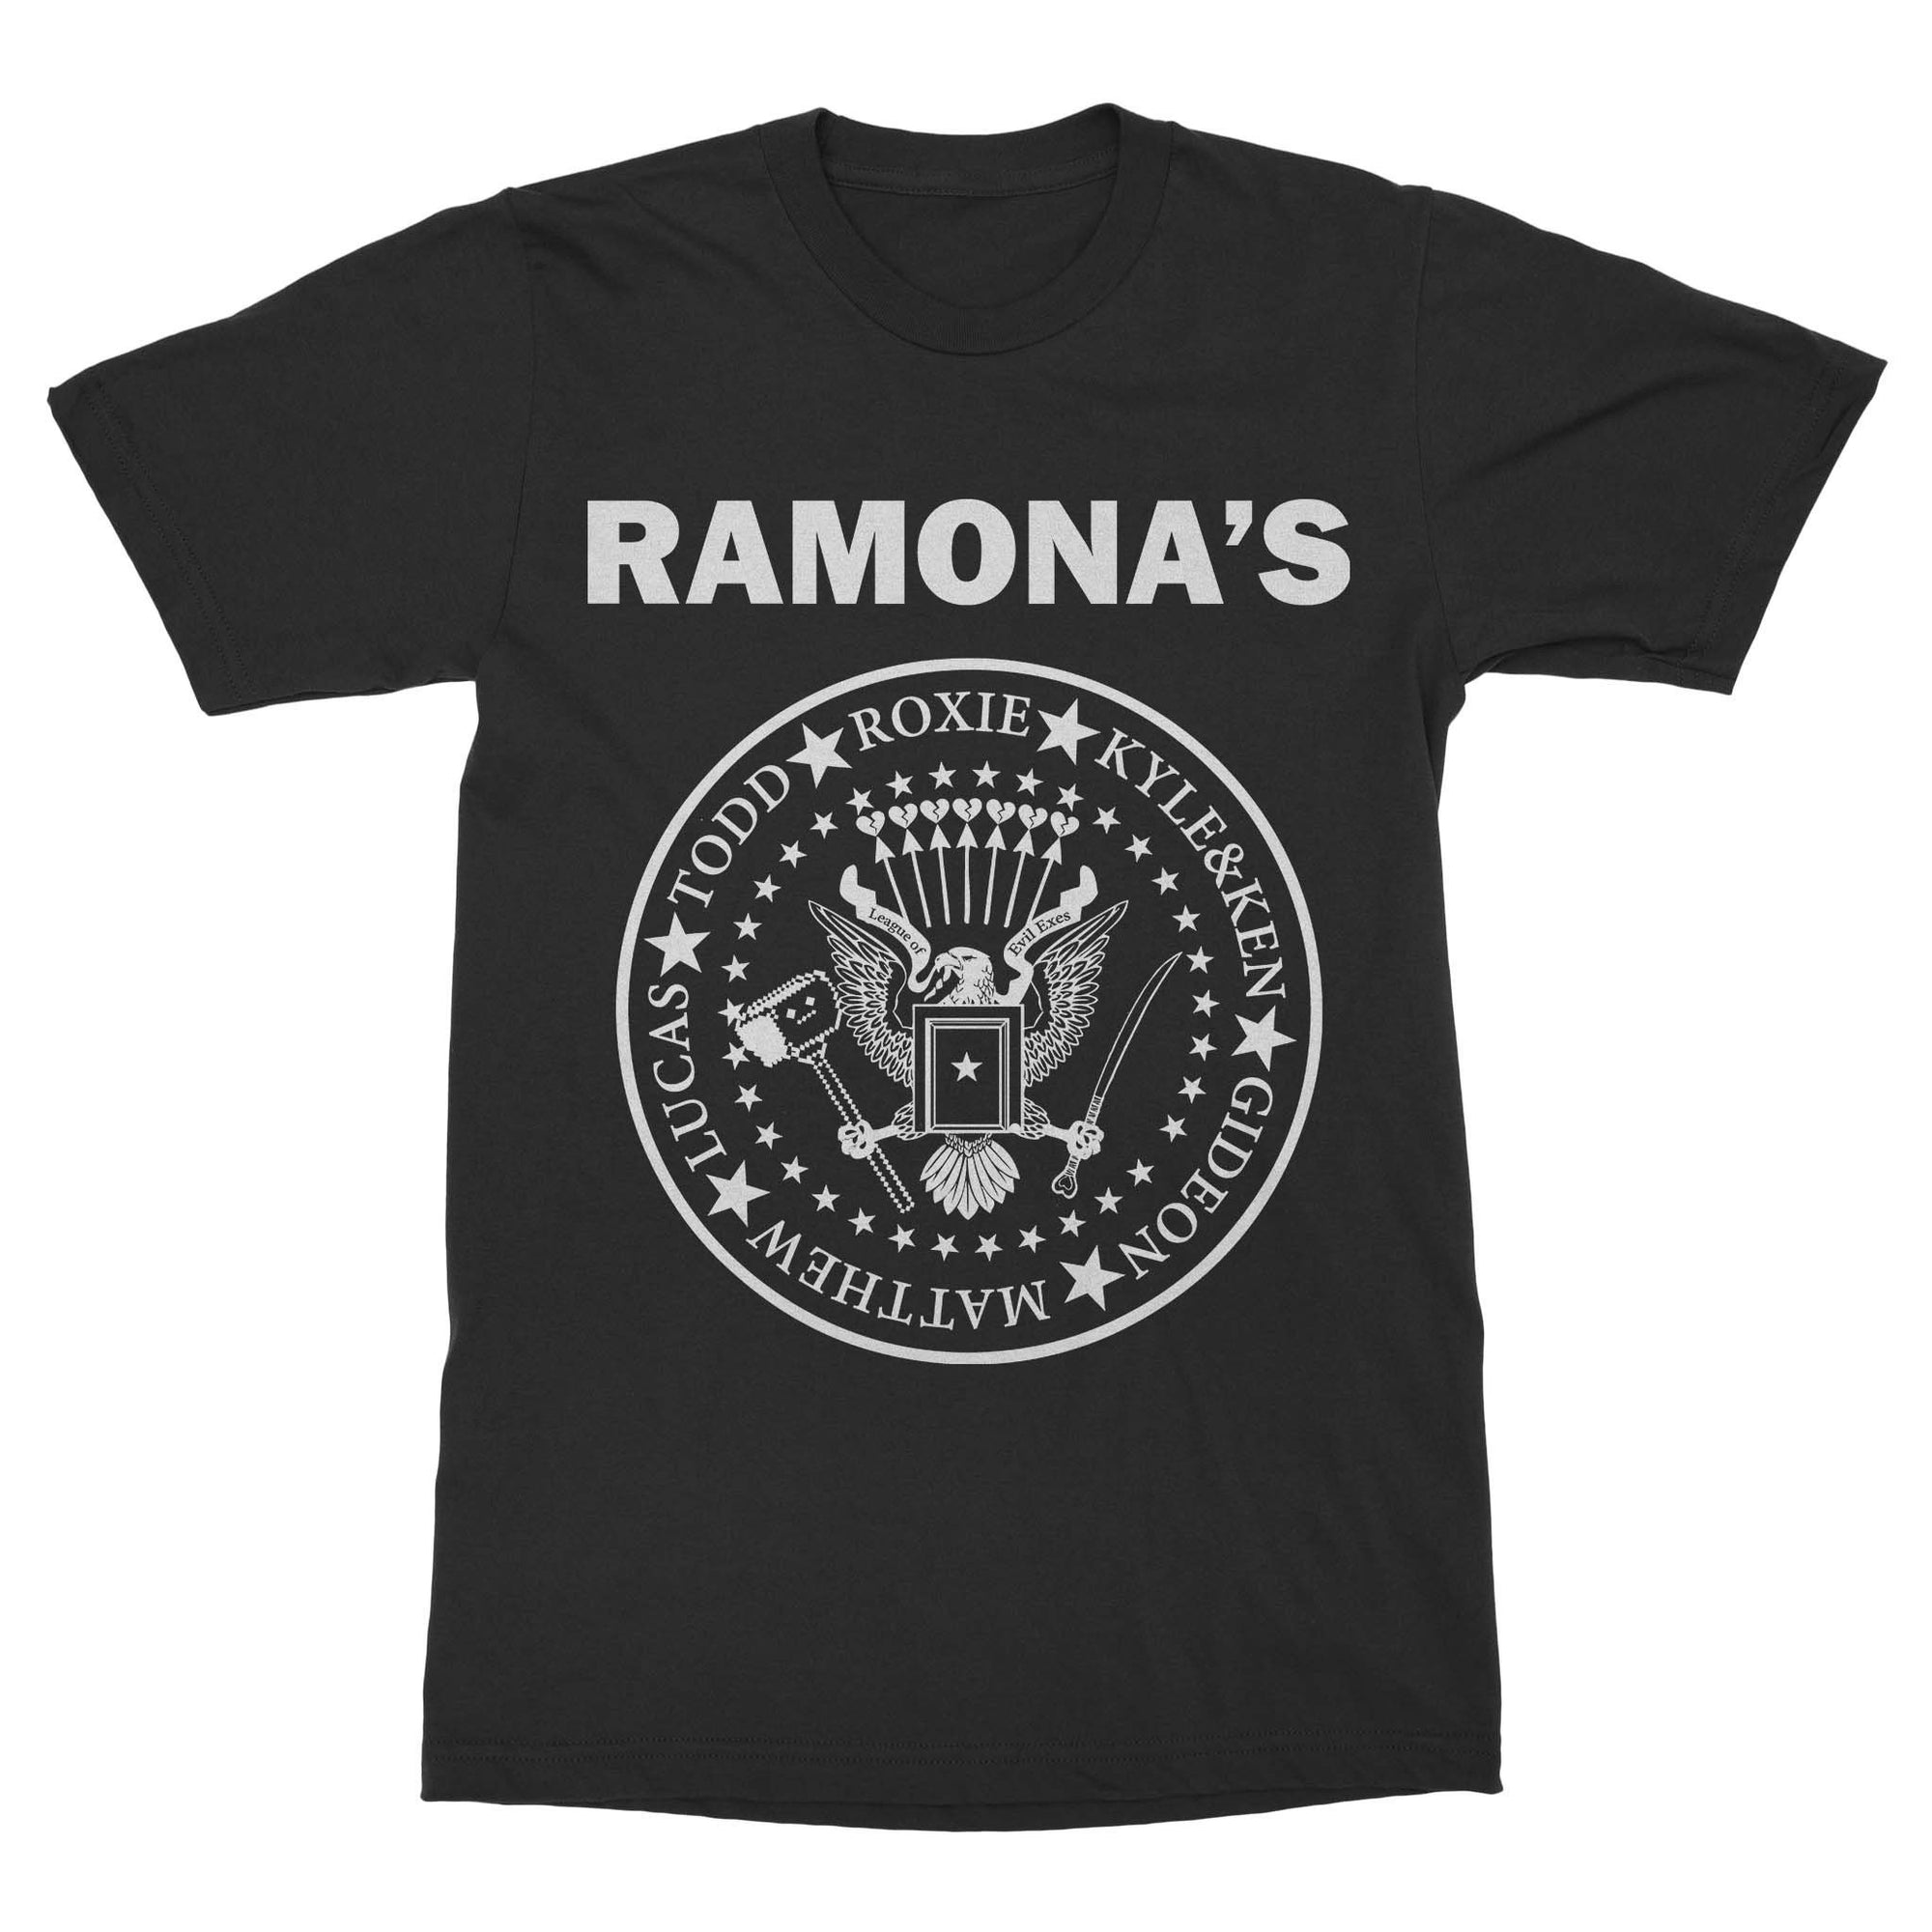 Ramona's Shirt-T-Shirts-Shirtasaurus-Basic-S-Black-Shirtasaurus